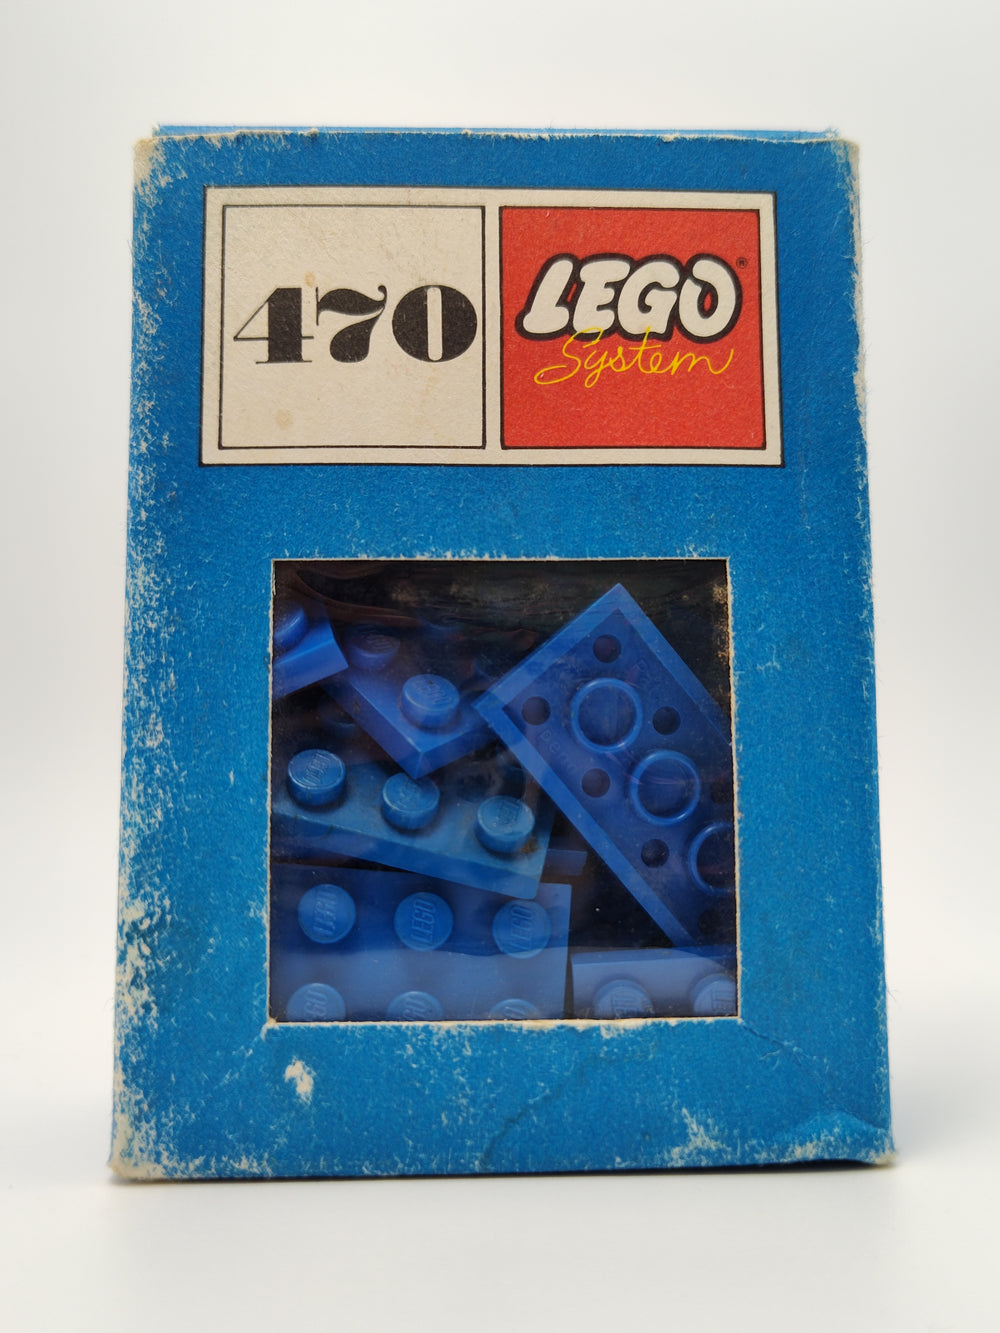 Set 470-1, 1 x 1, 1 x 2, 2 x 2, 2 x 3, 2 x 4 Plates (System) Building Kit LEGO®   